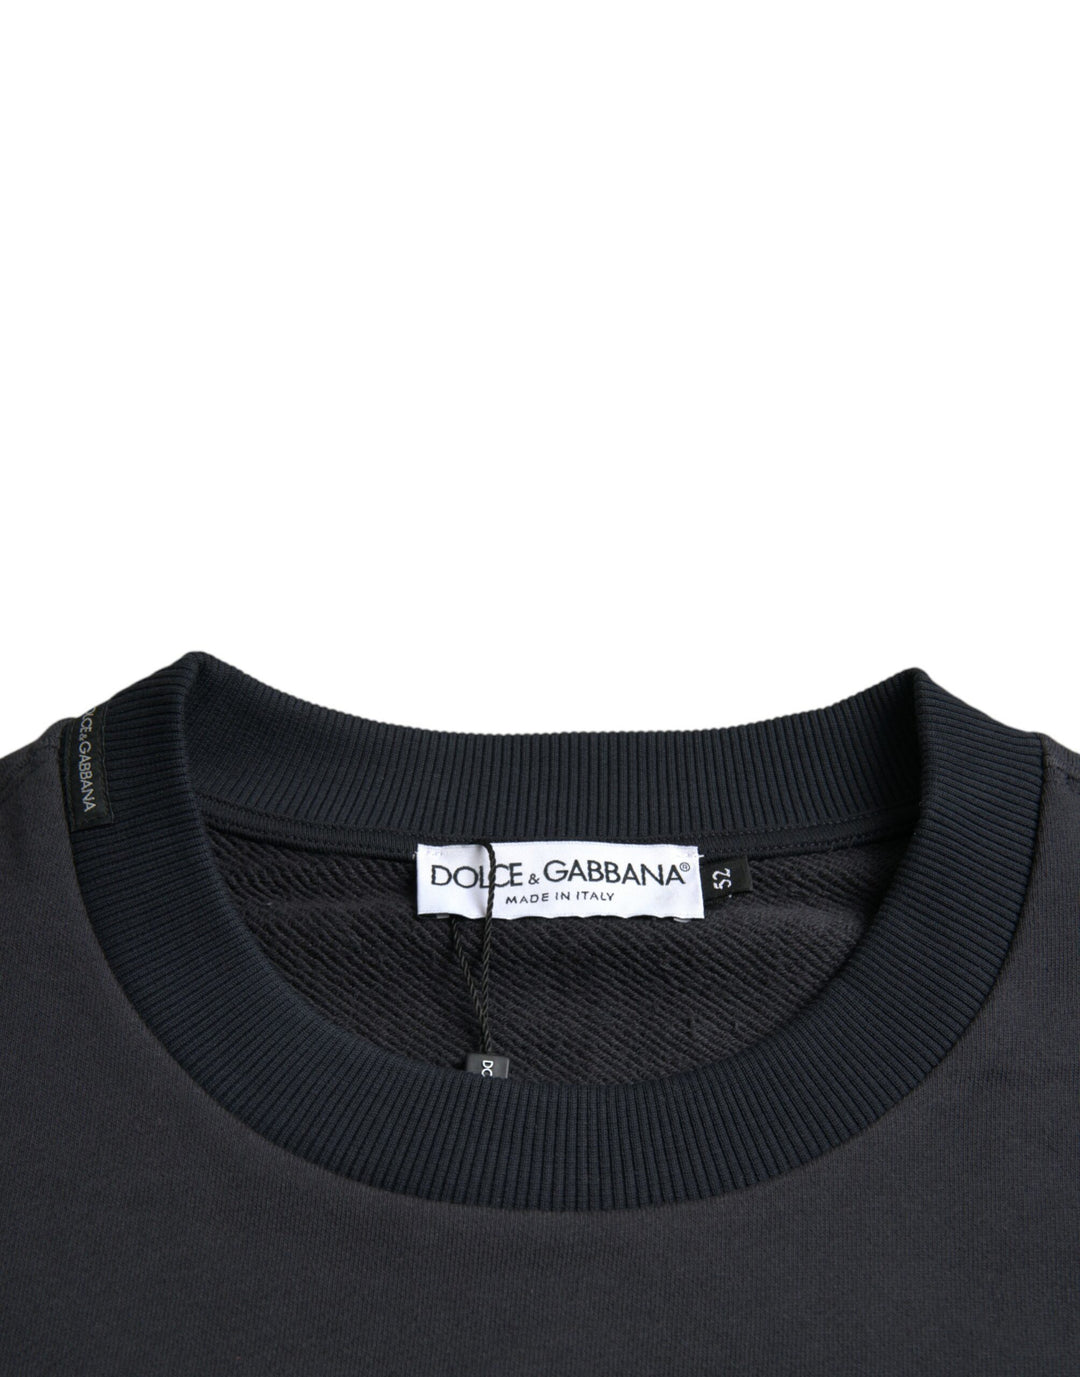 Dolce & Gabbana Dark Blue Cotton Logo Plaque Sweatshirt Sweater